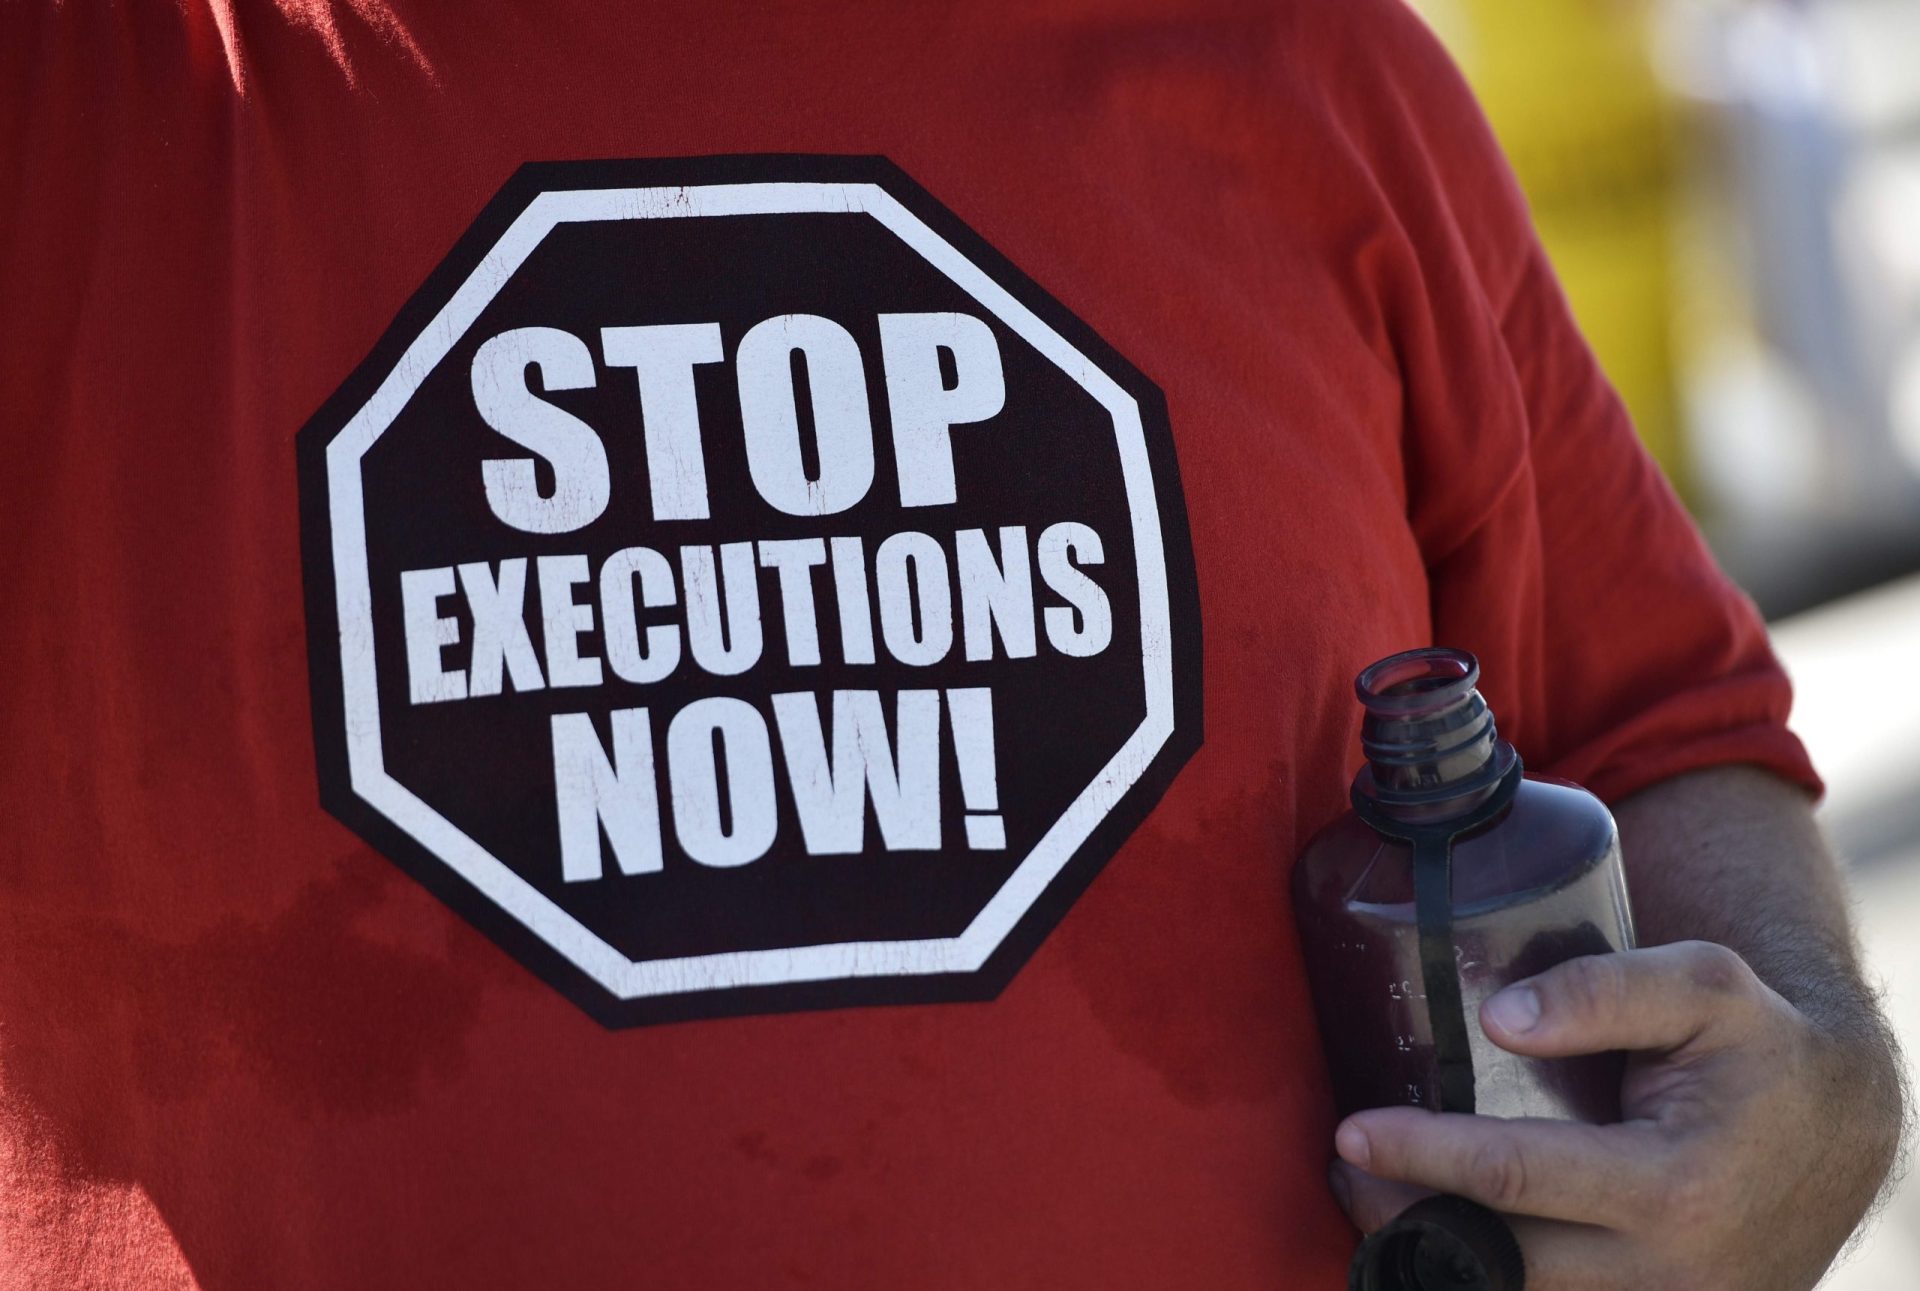 EUA fora do top 5 dos países com mais execuções, pela primeira vez em 10 anos